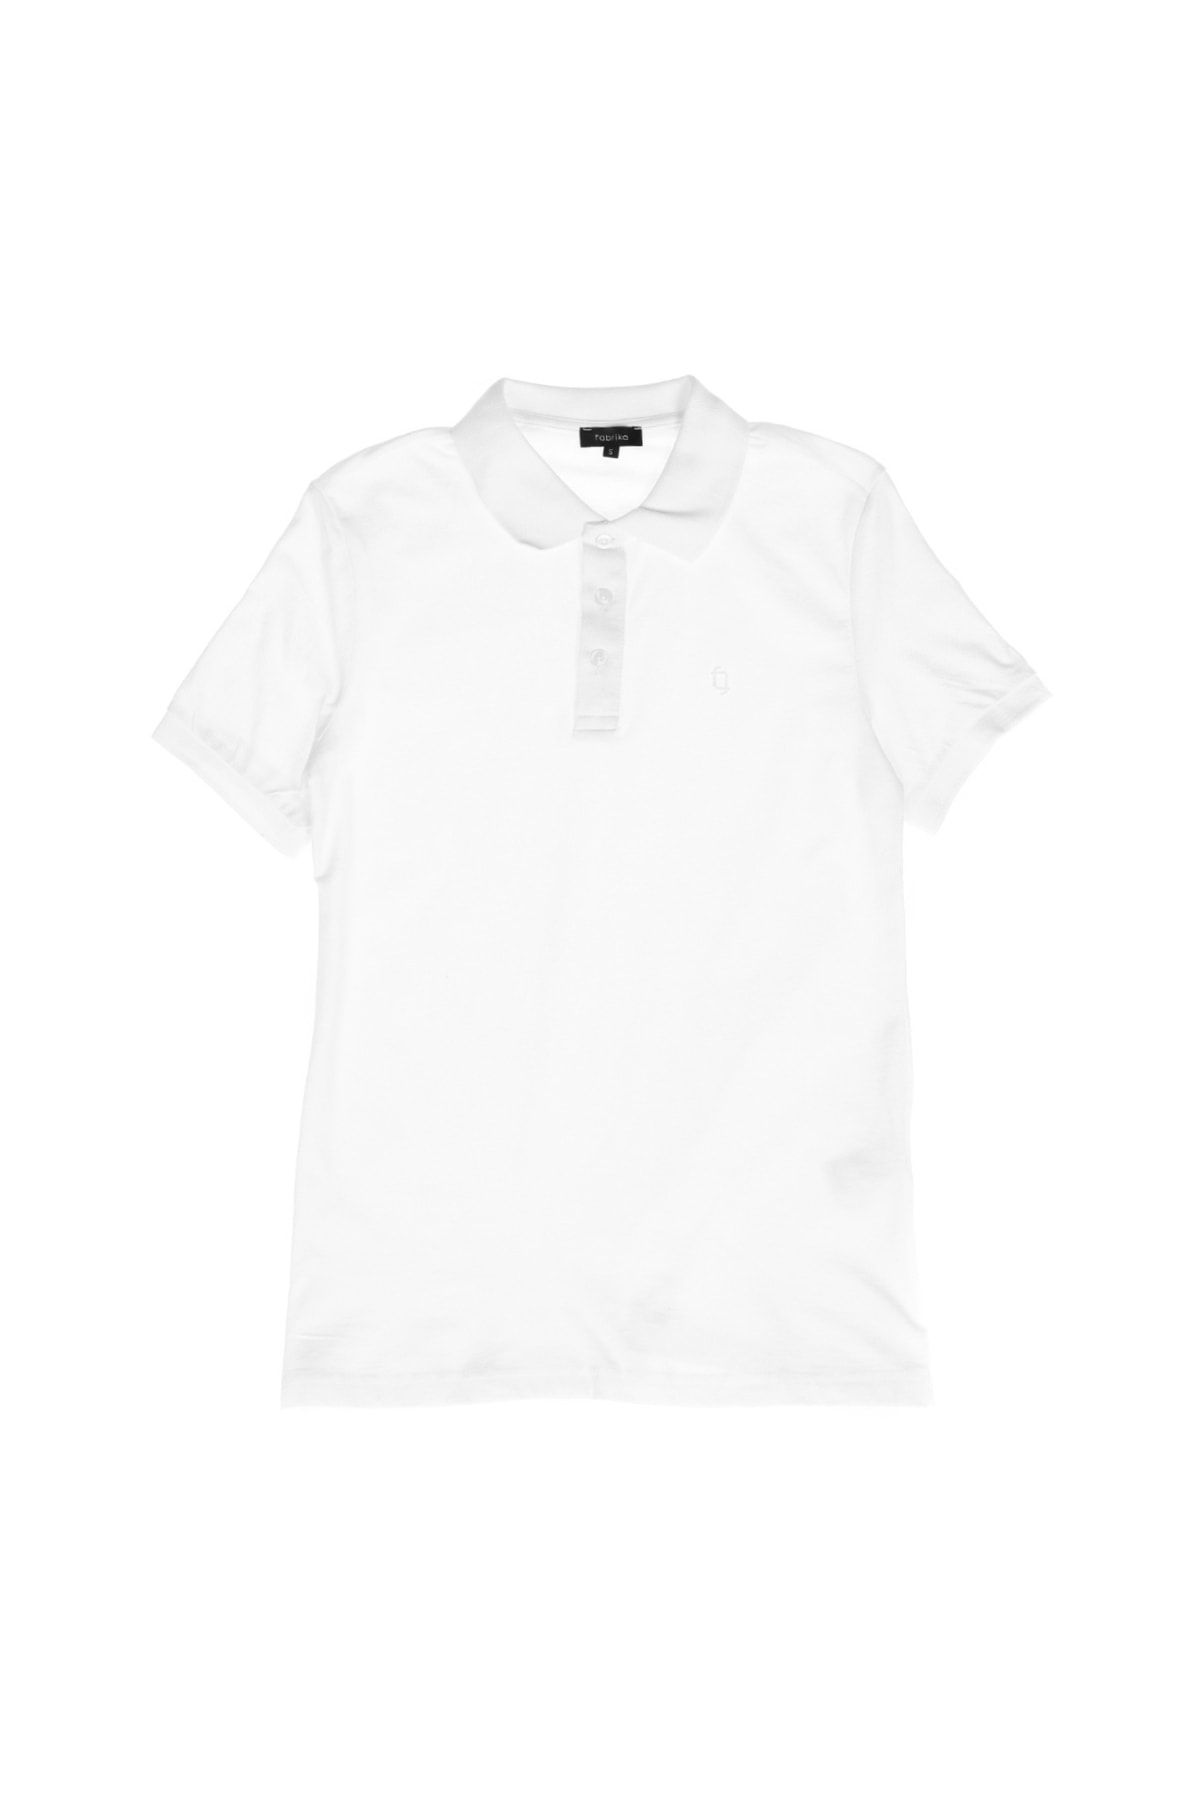 Fabrika Basic Düz Beyaz Erkek Polo T-shirt - Legolas